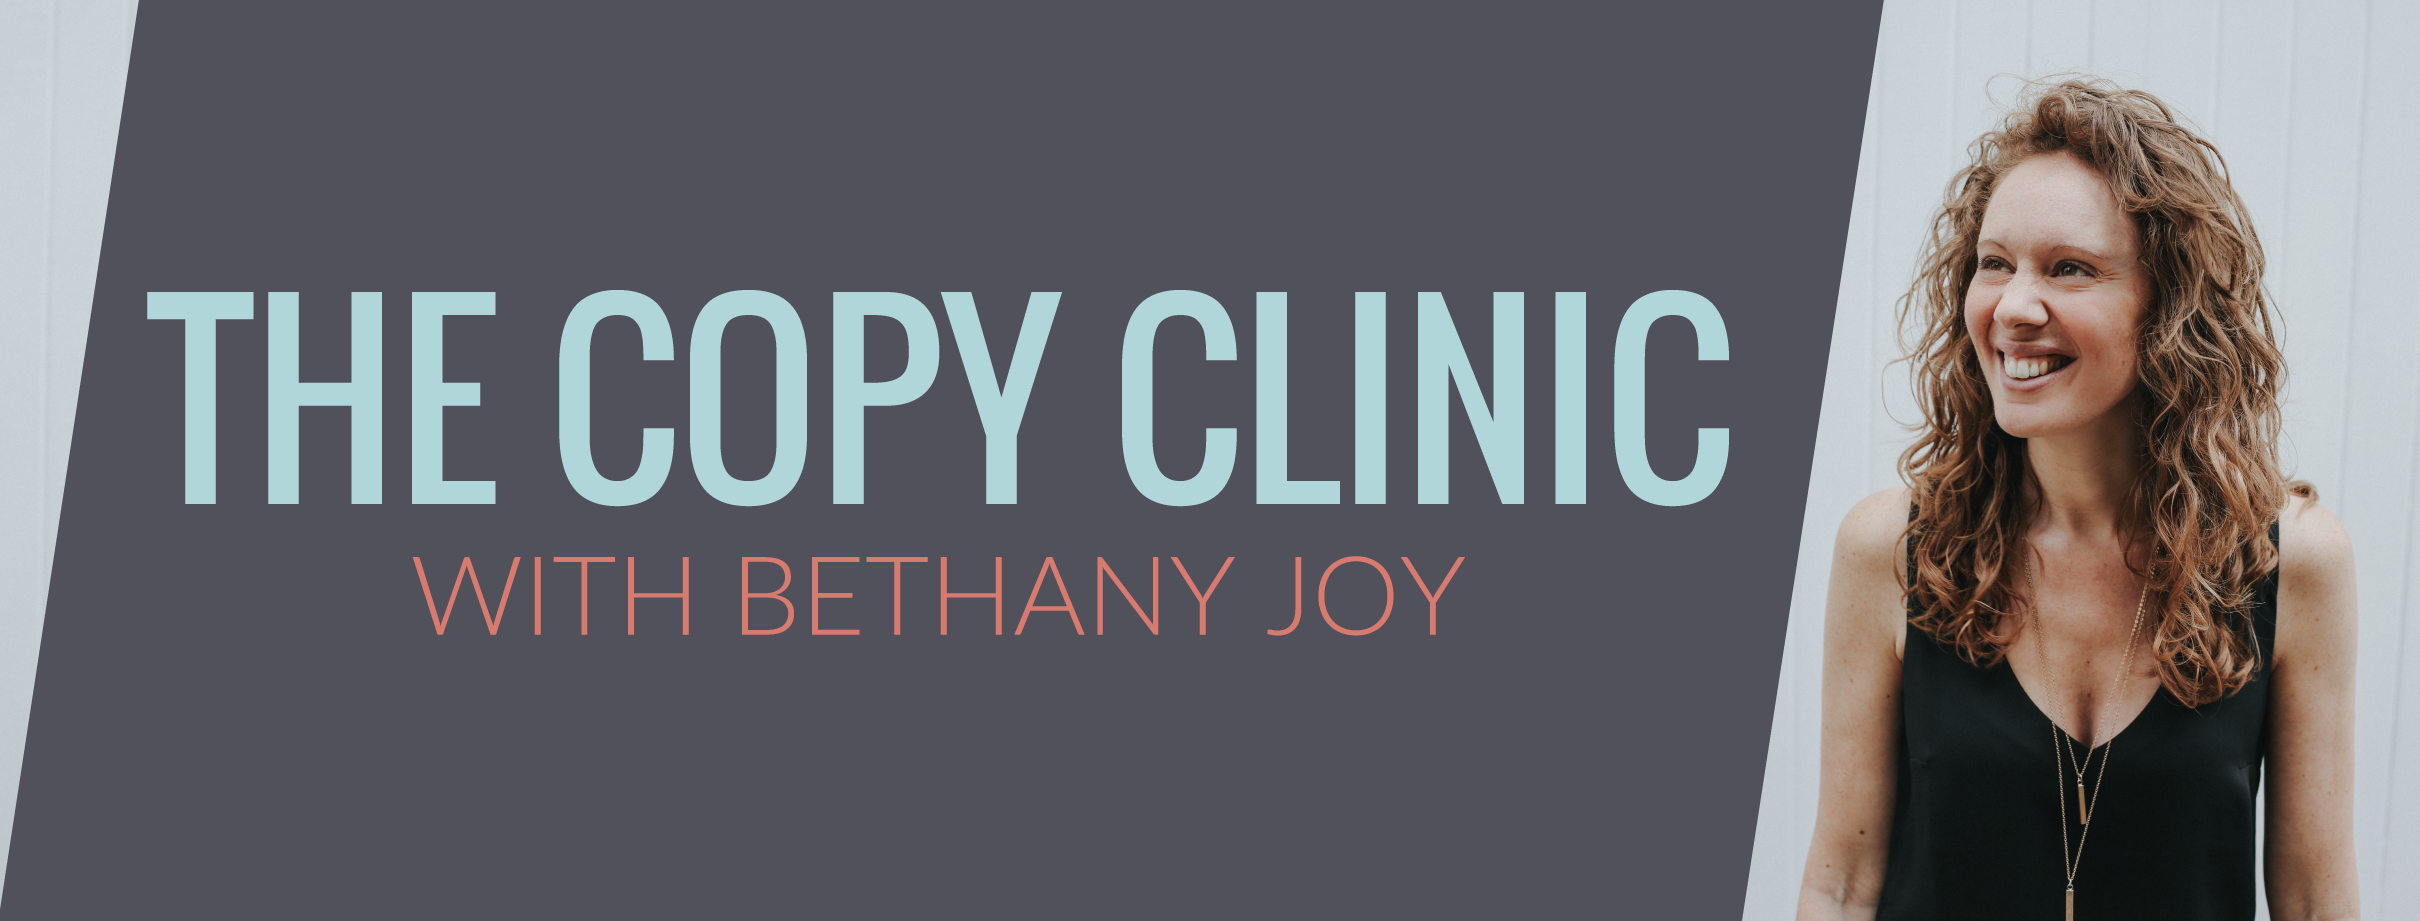 Copy Clinic with Bethany Joy